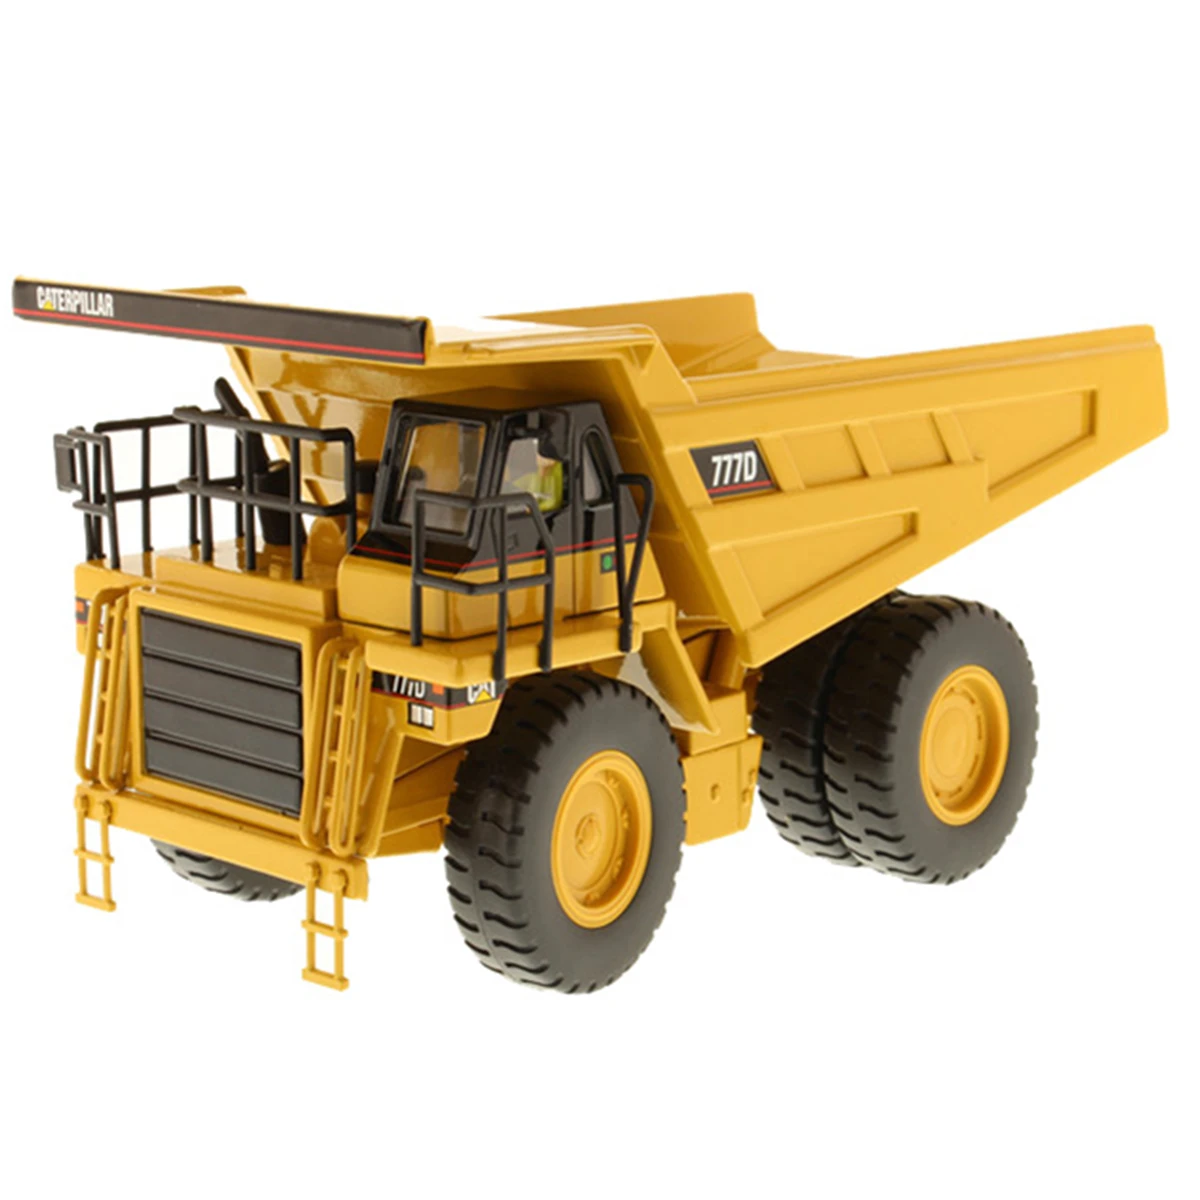 Modelo de coche de construcción a escala 1:50, réplica de gato 777D, camión de basura de mina, vehículo de minería de Metal, regalo coleccionable, juguetes para niños y amigos